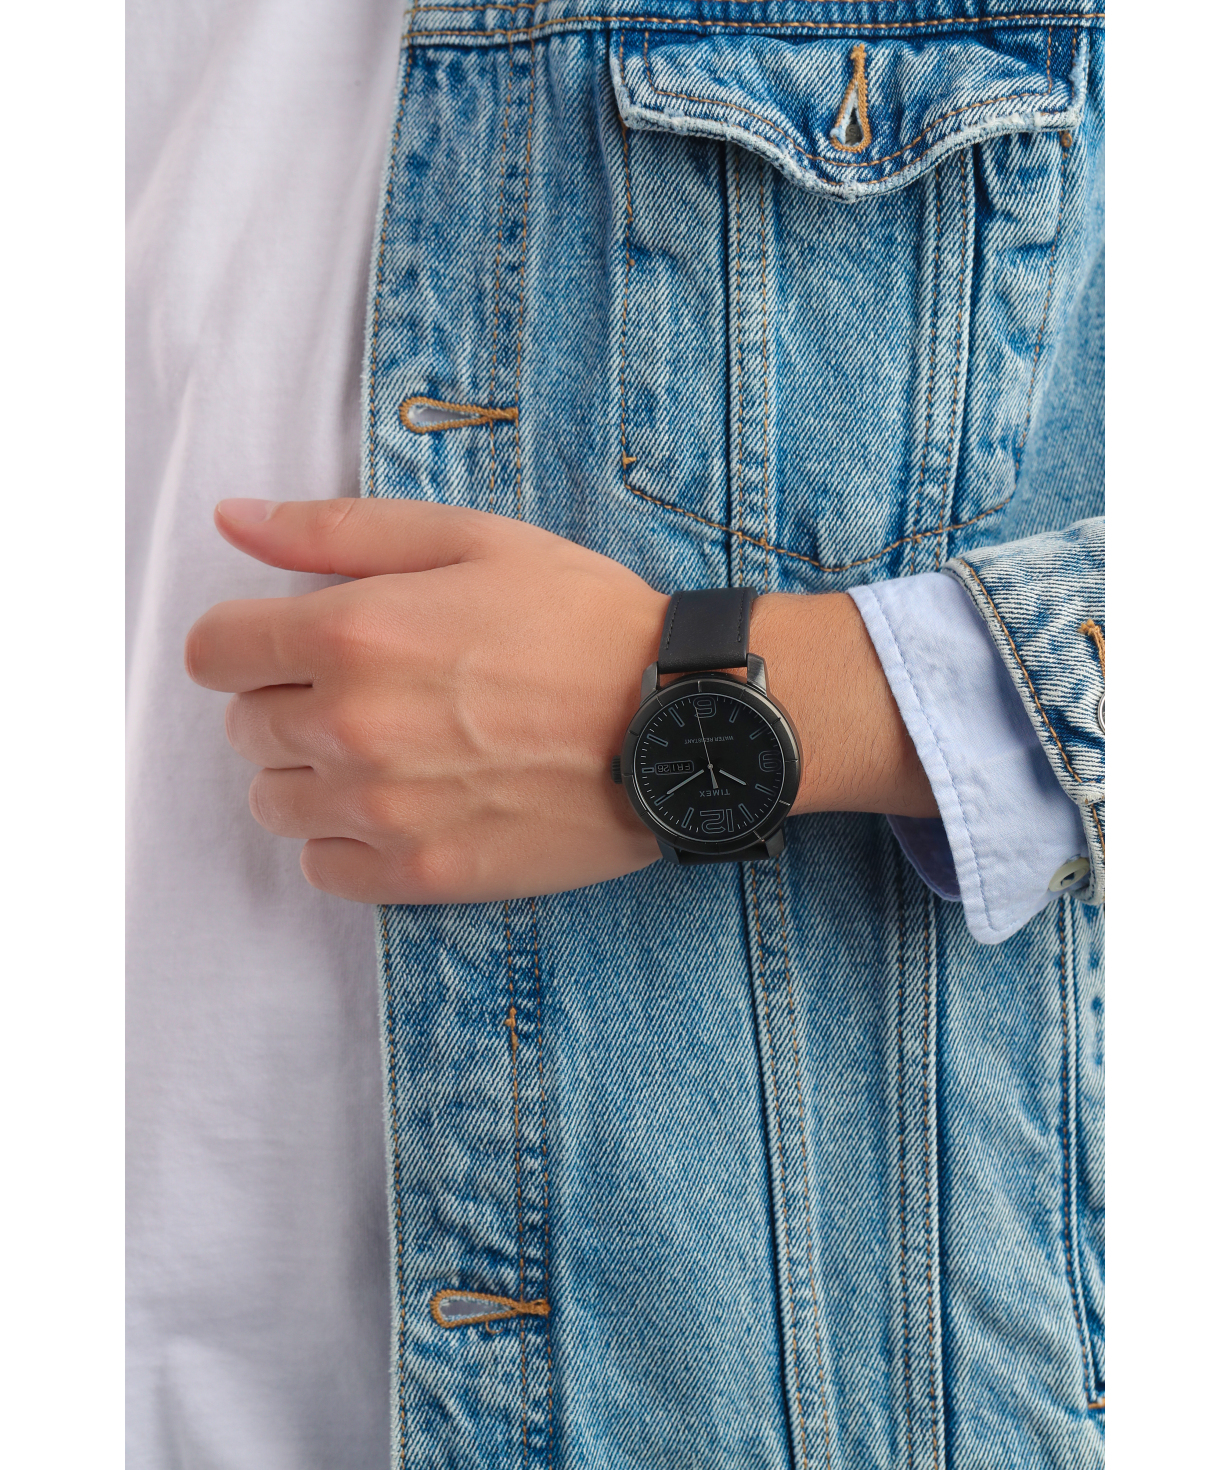 Wristwatch `Timex` TW2R64300